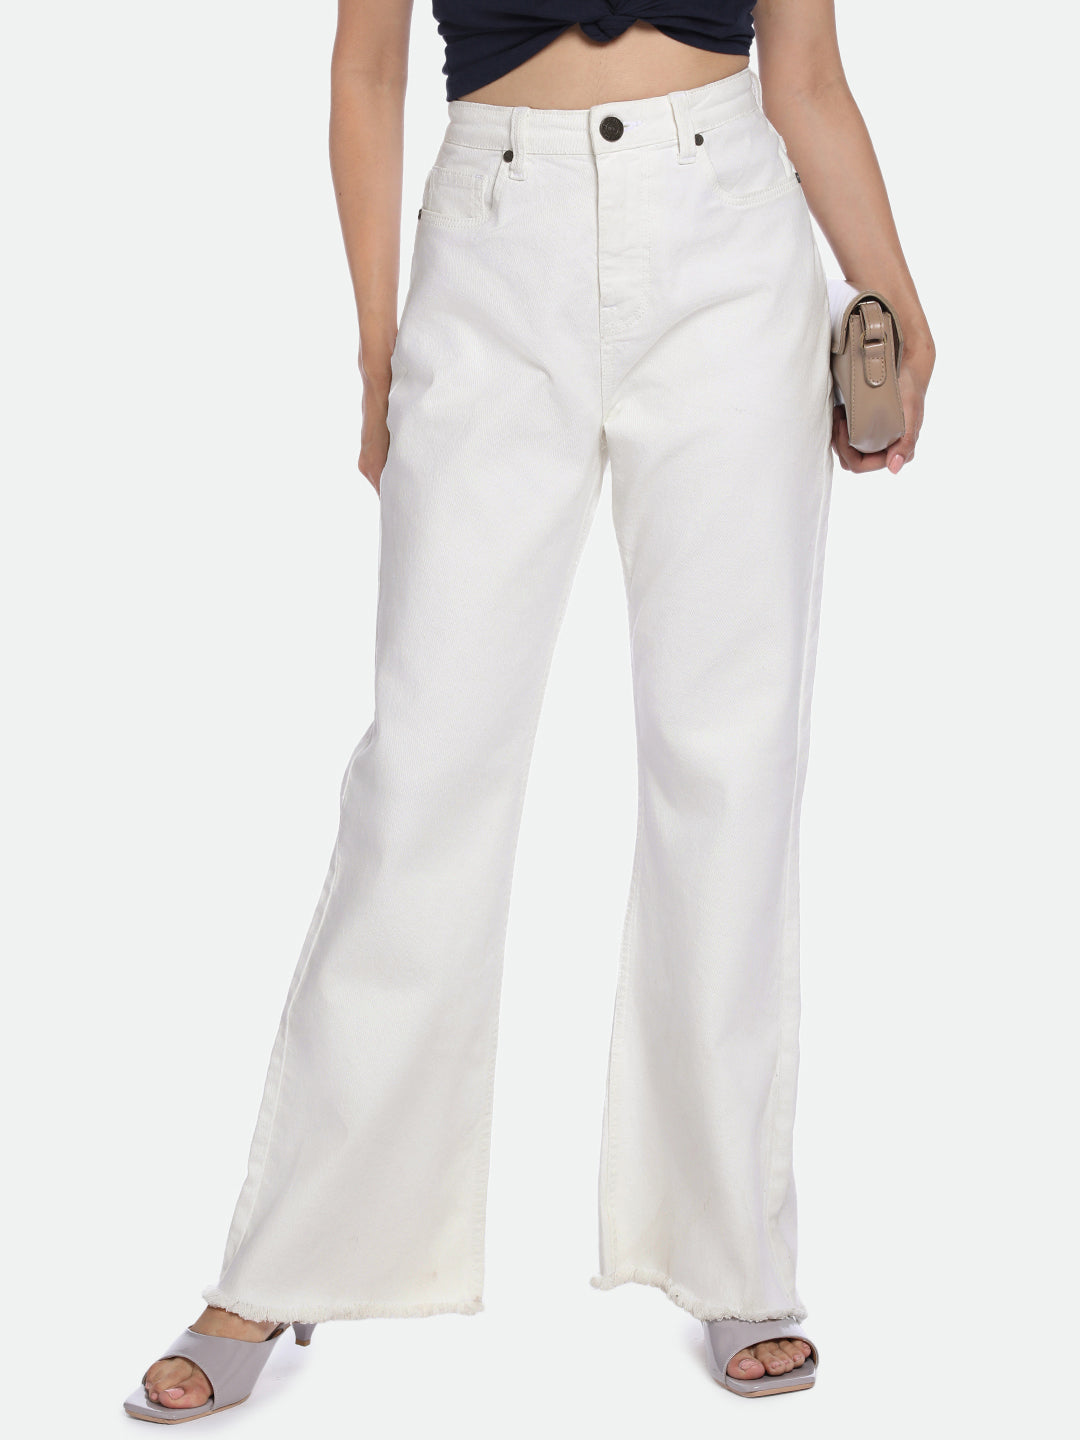 DL Woman White Bootcut Jeans